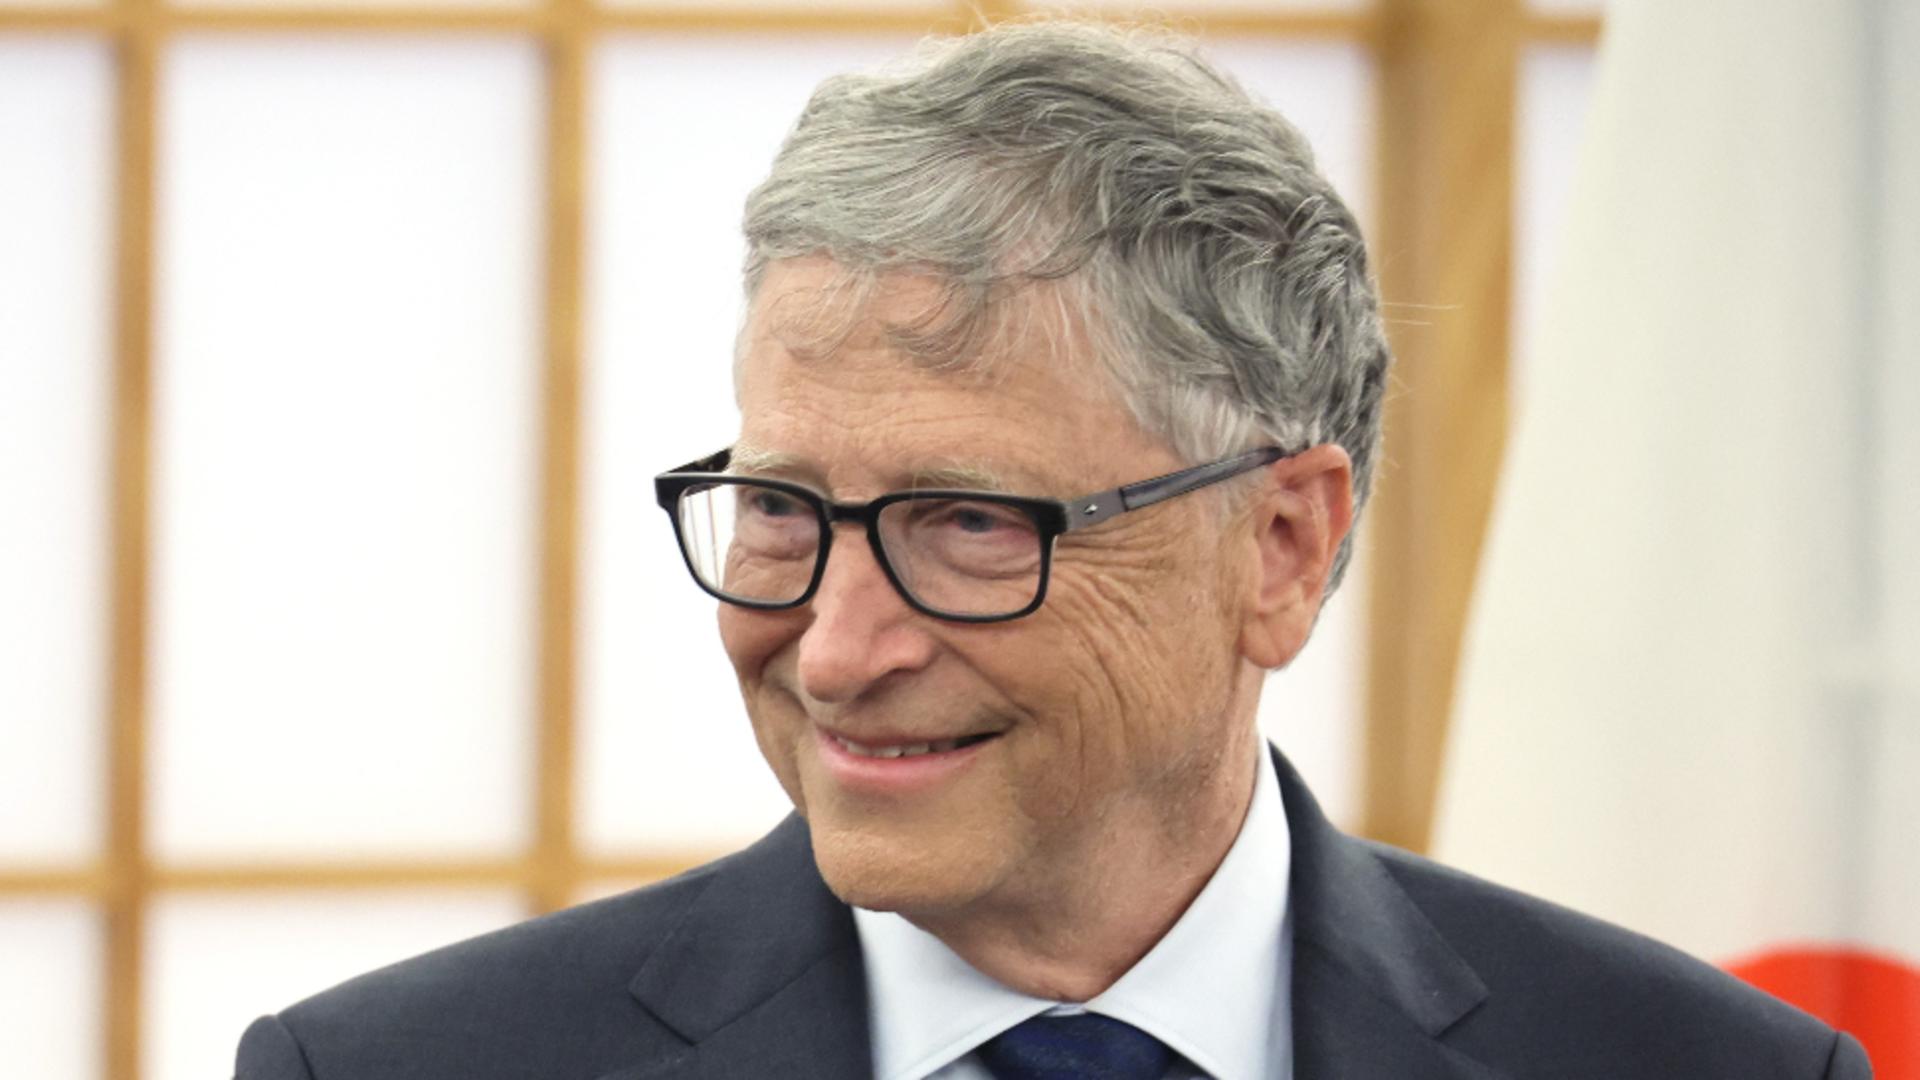 Bill Gates / Sursa foto: Profi Media